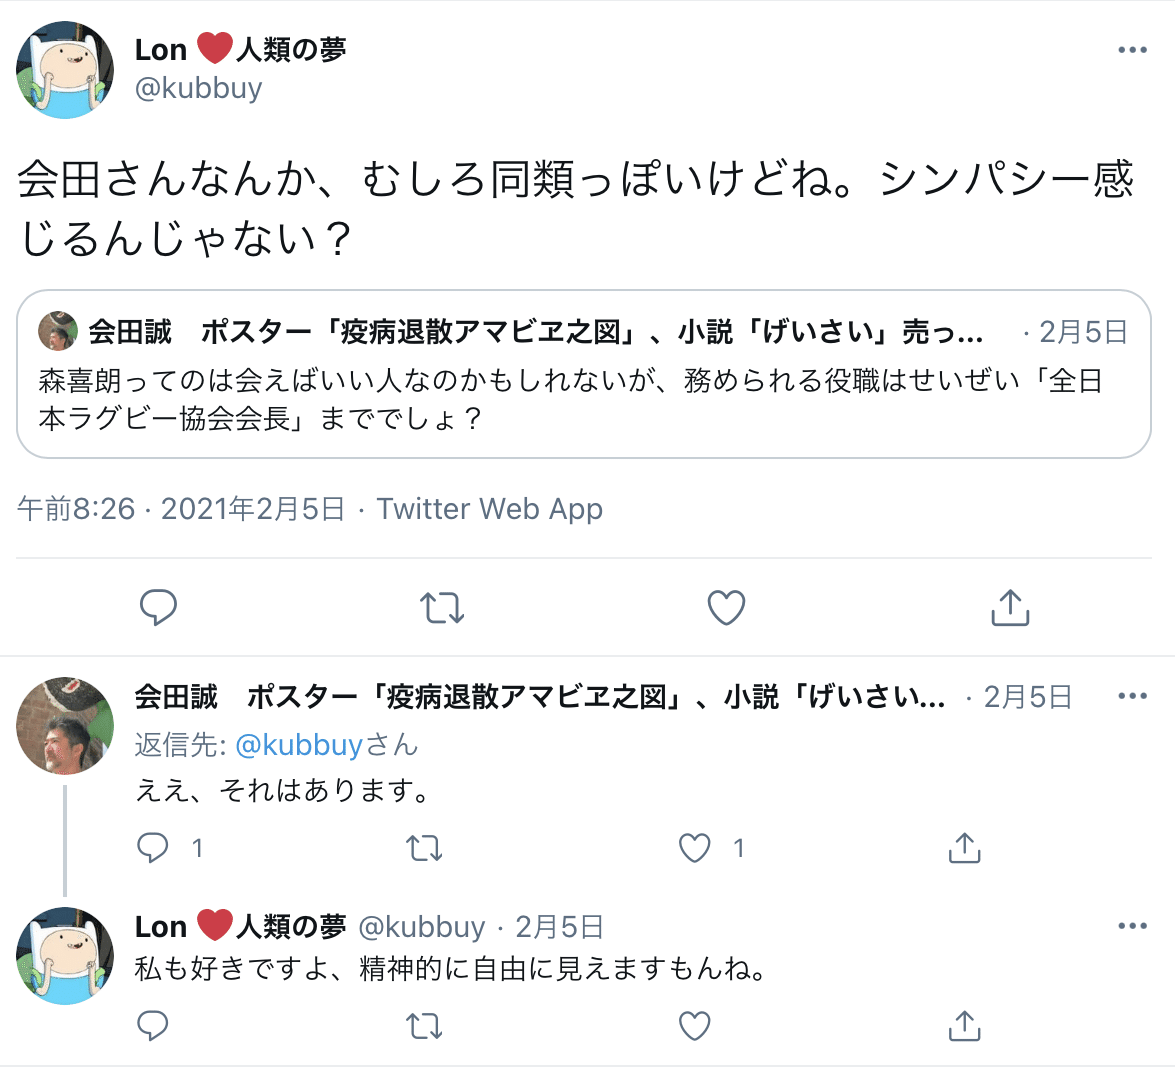 Lon ❤️人類の夢さんはTwitterを使っています 「会田さんなんか、むしろ同類っぽいけどね。シンパシー感じるんじゃない？」  Twitter